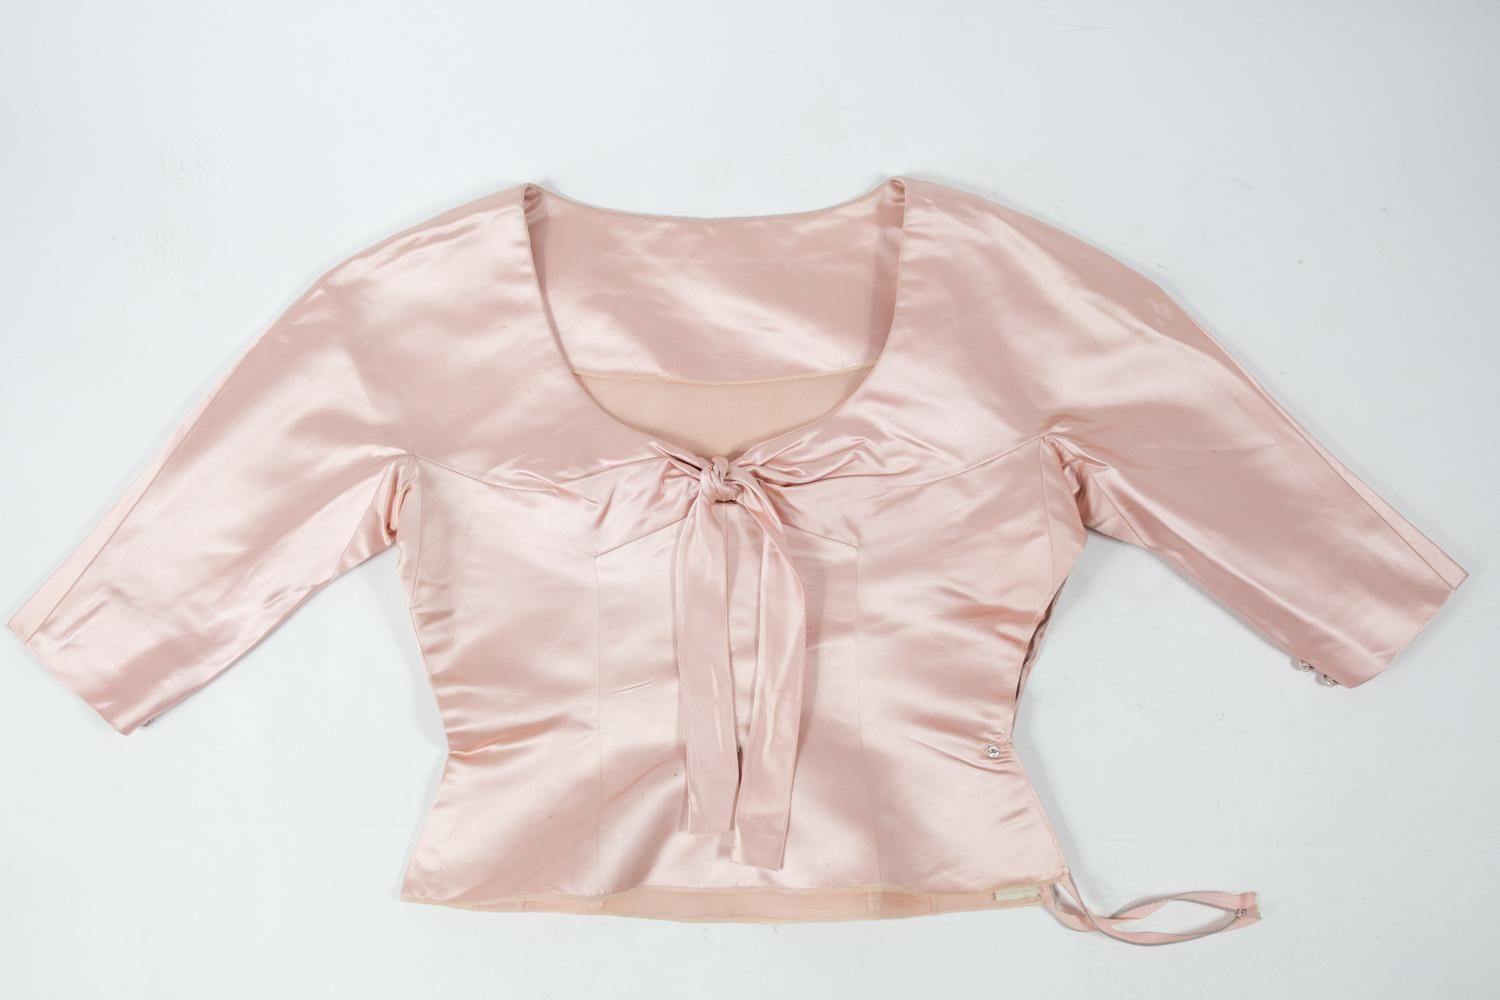 Circa 1958/1962
France
 
Majestueuse robe du soir en satin rose poudré de Cristobal Balenciaga Haute Couture numérotée 61819 et datant de 1958/1962. Robe en deux parties, bustier structuré avec manches raglan trois-quarts garnies de deux boutons.